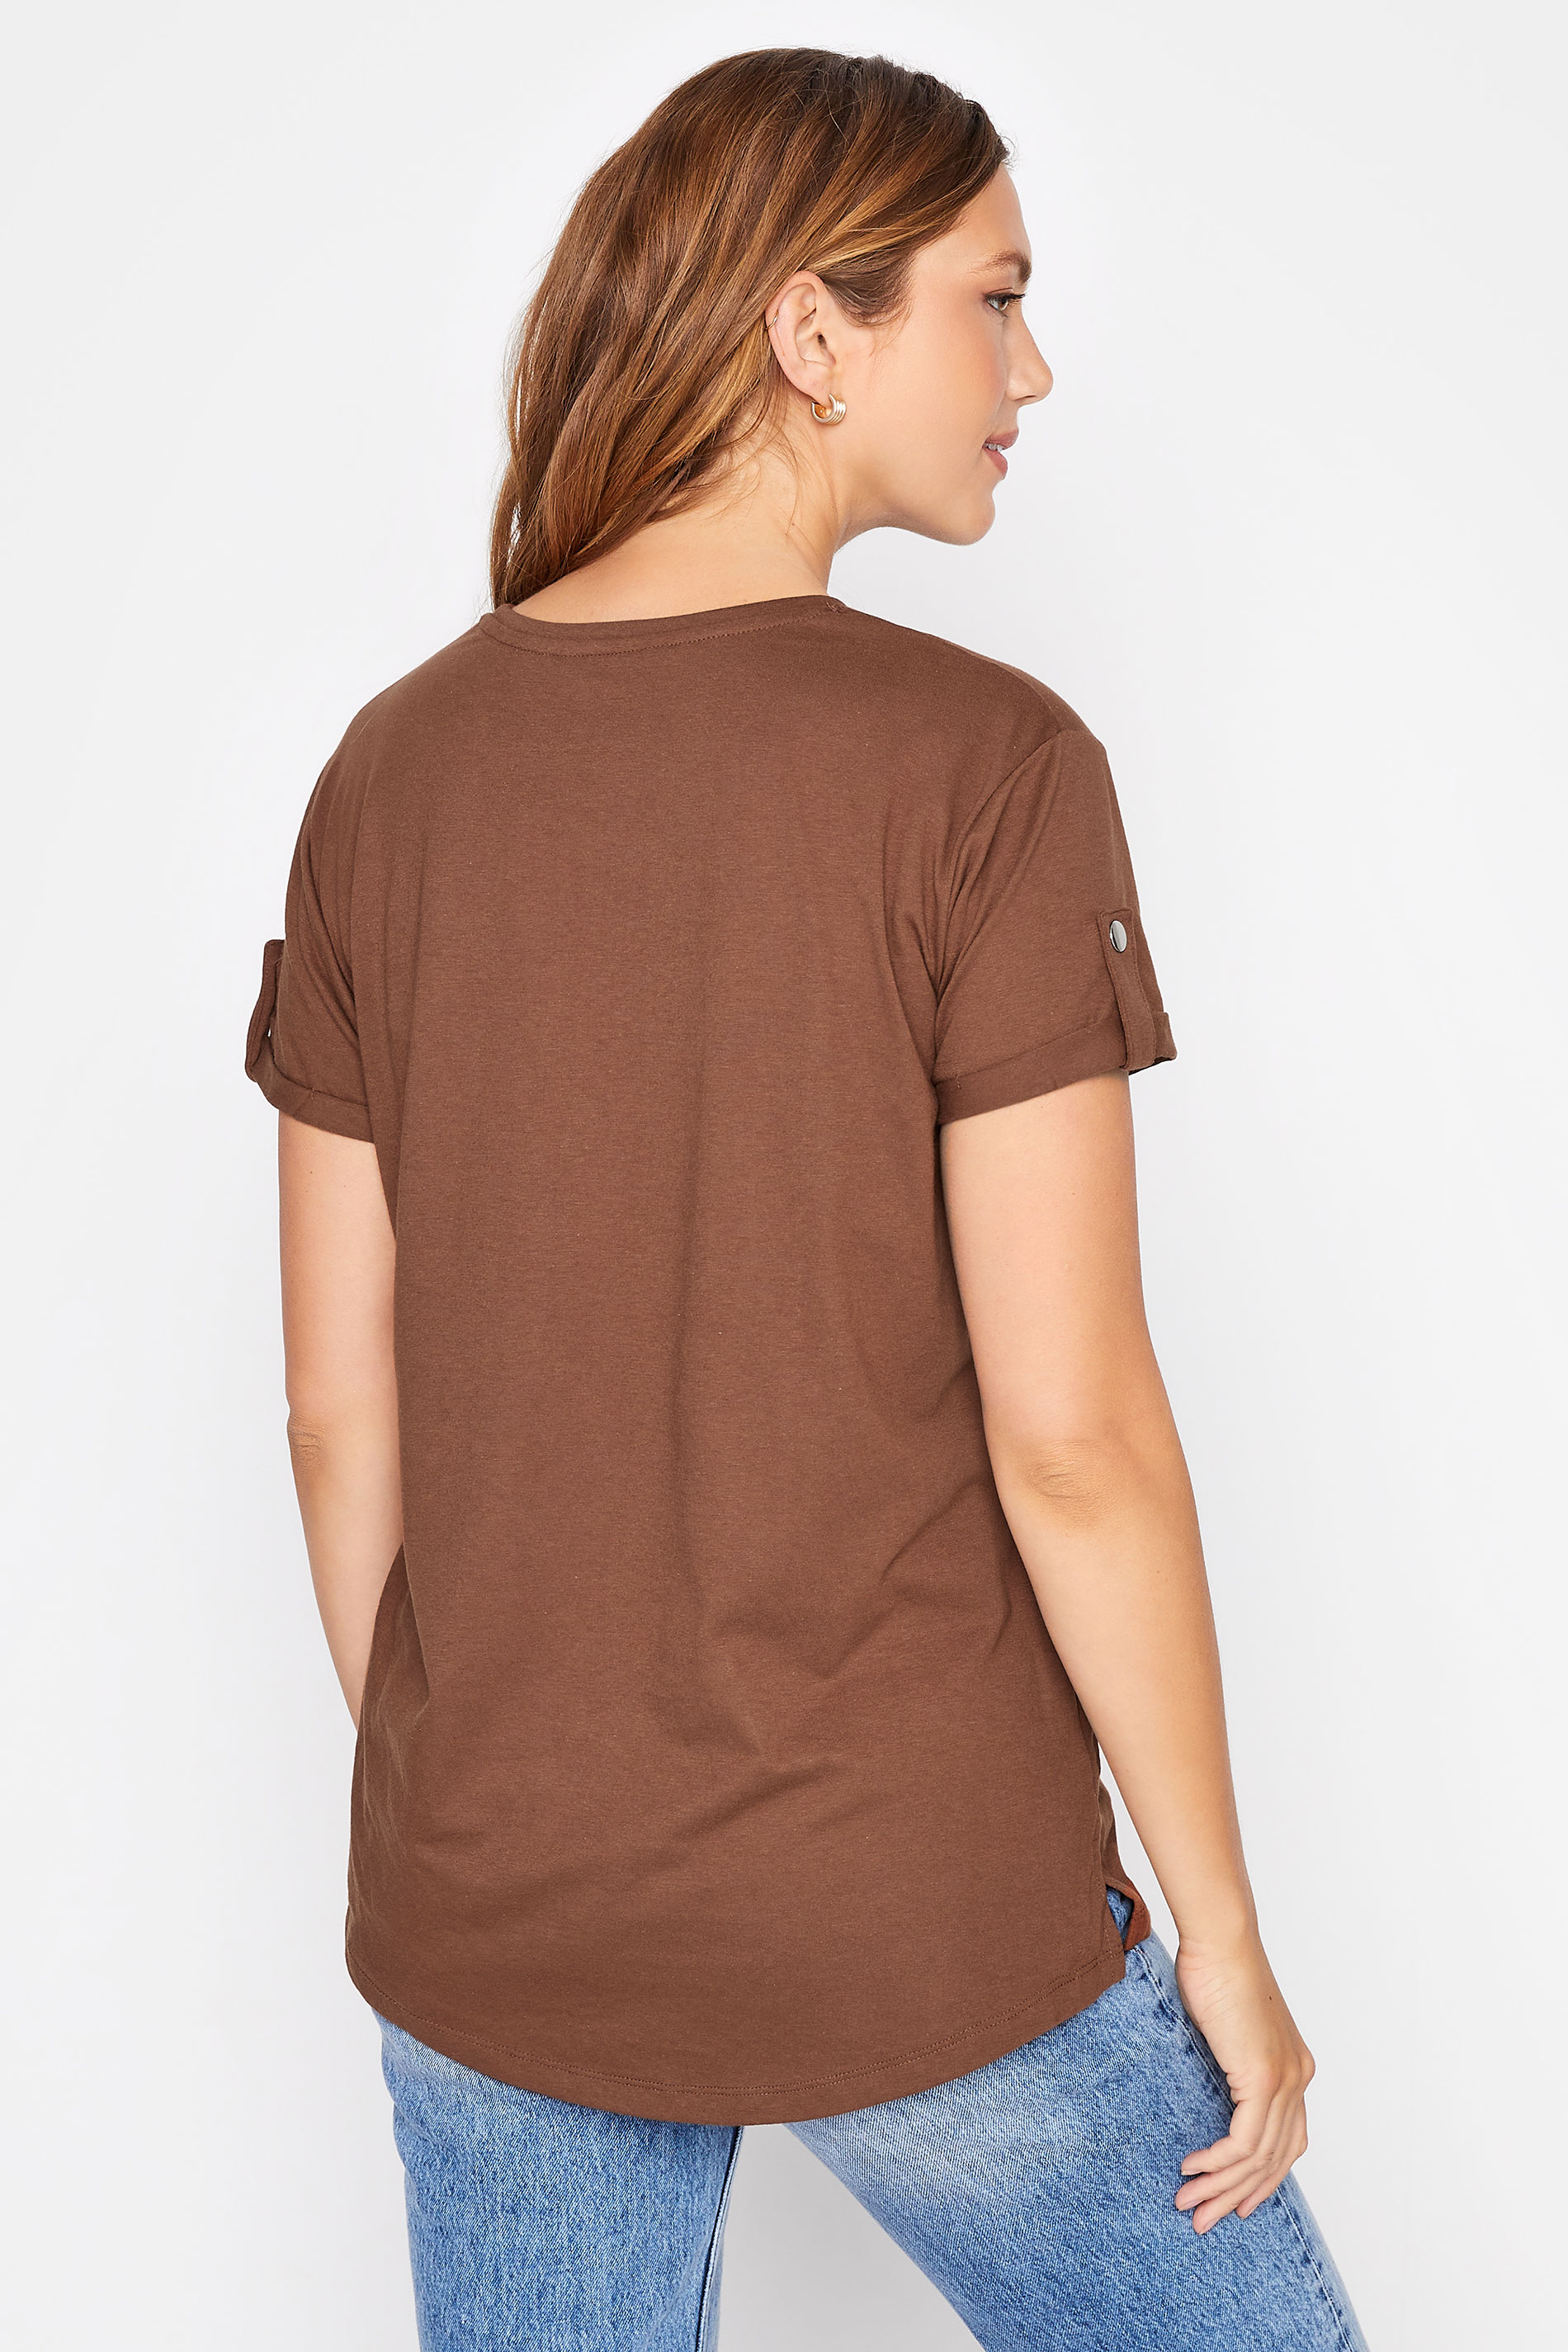 Tall Women's LTS Brown Short Sleeve Pocket T-Shirt | Long Tall Sally 3